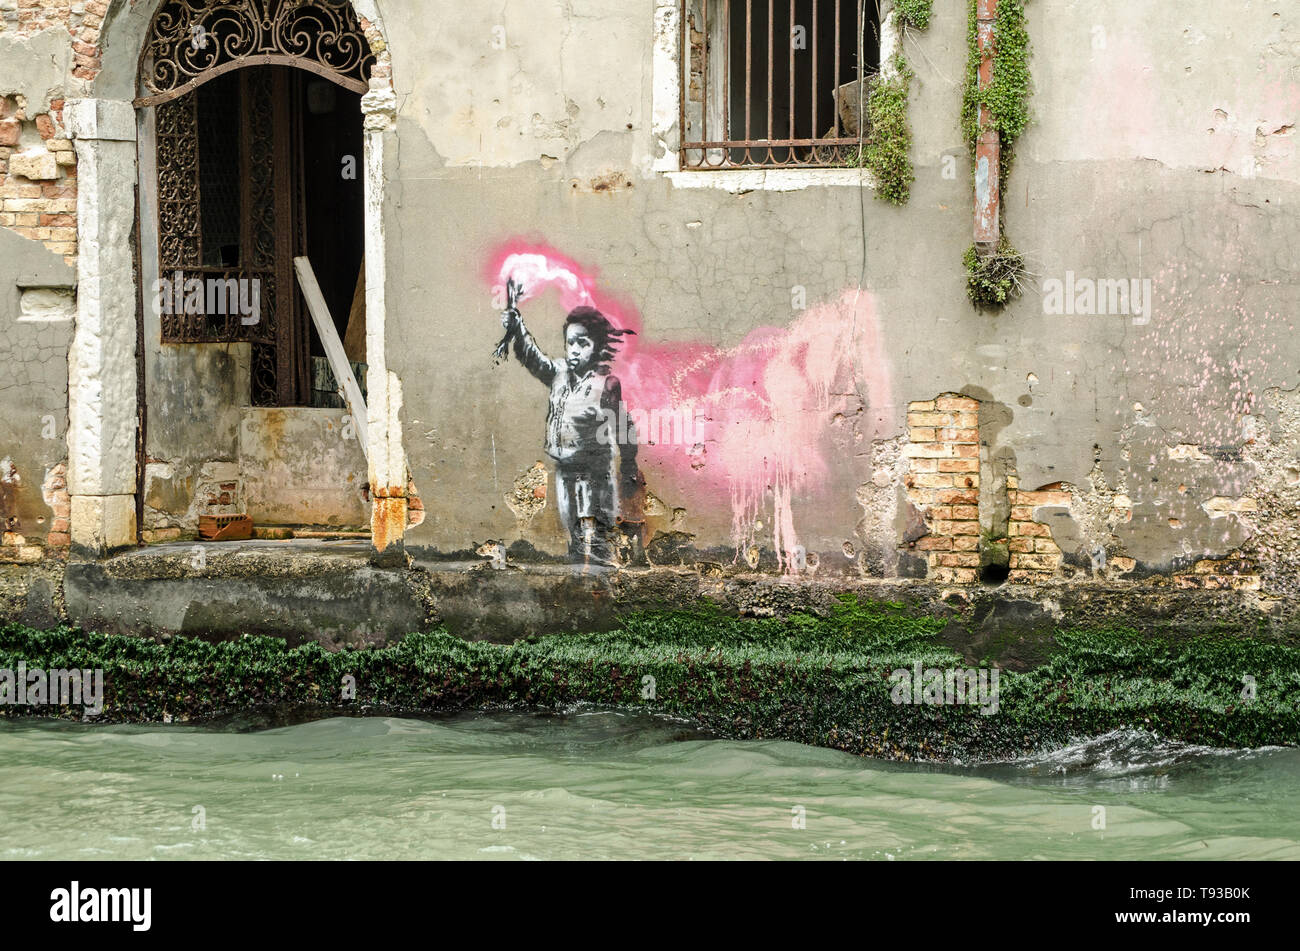 Venedig, Italien, 15. MAI 2019: Stencil street art von einem Kind das Tragen einer Schwimmweste und schwenkte eine Fackel zugeschrieben, Graffiti Künstler Banksy. Gesehen her Stockfoto